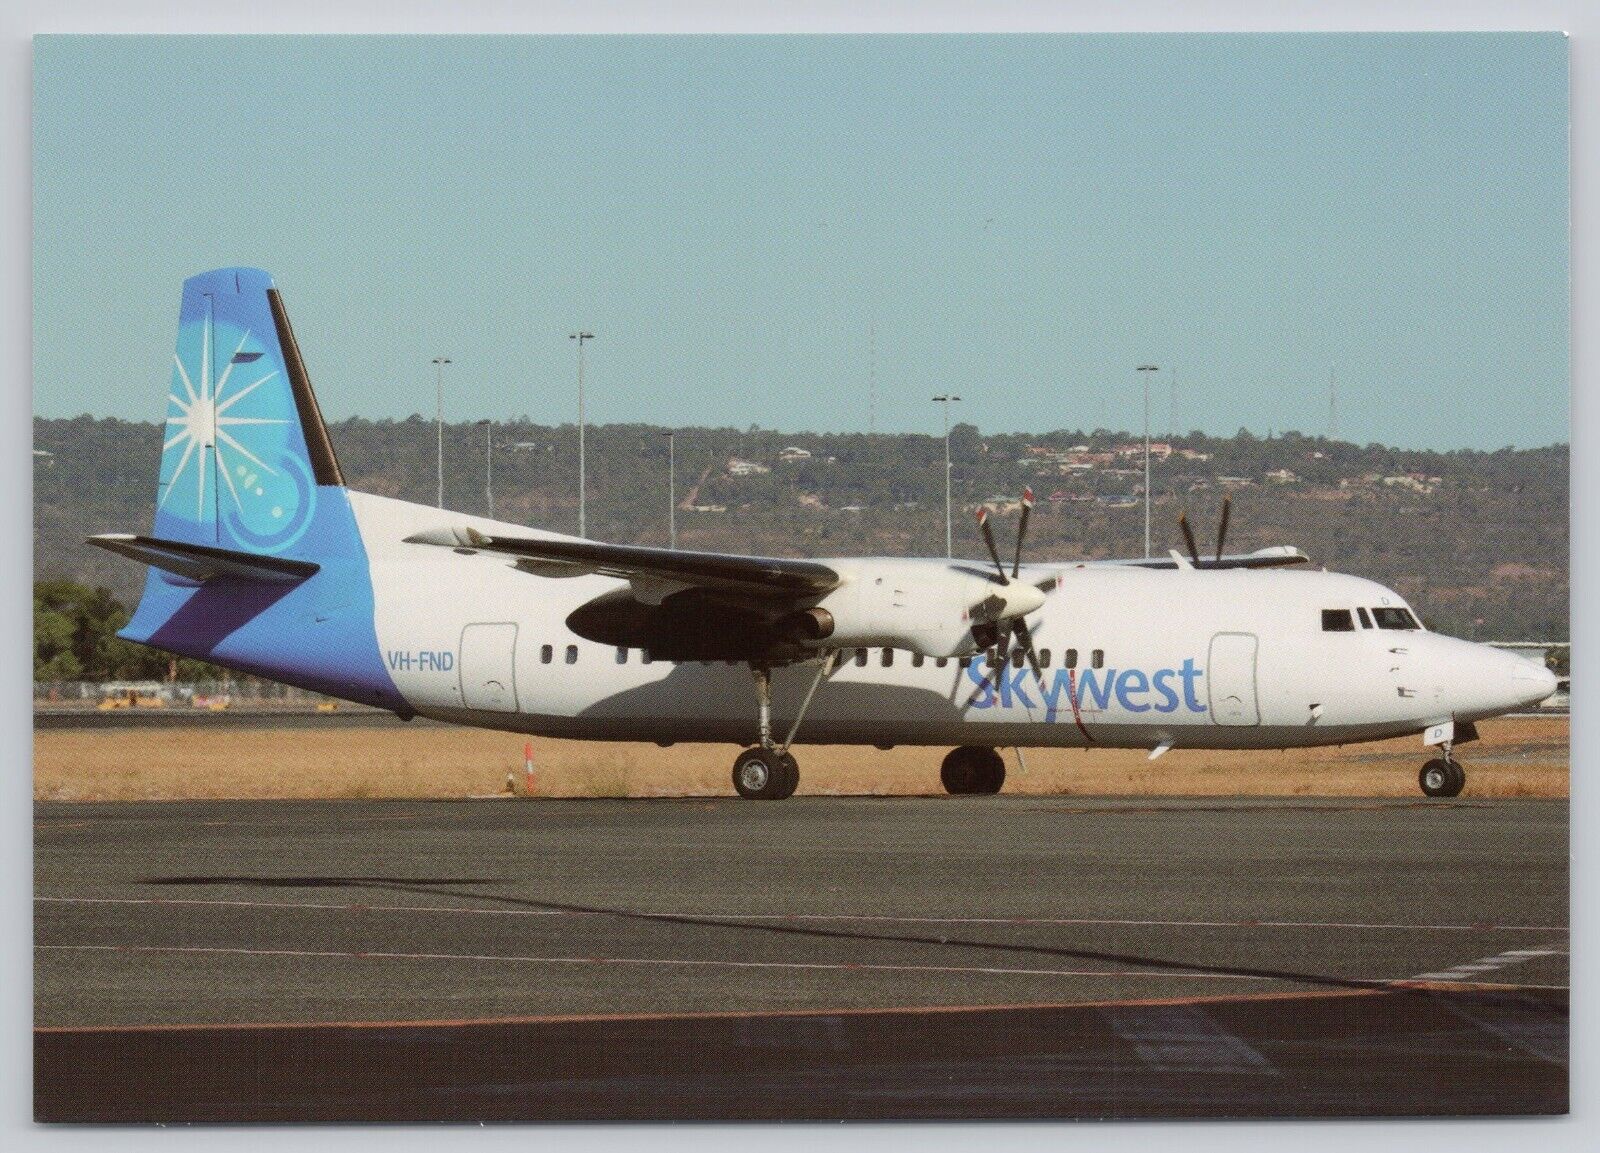 Postcard SkyWest Fokker 50 VH-FND Perth Airlines